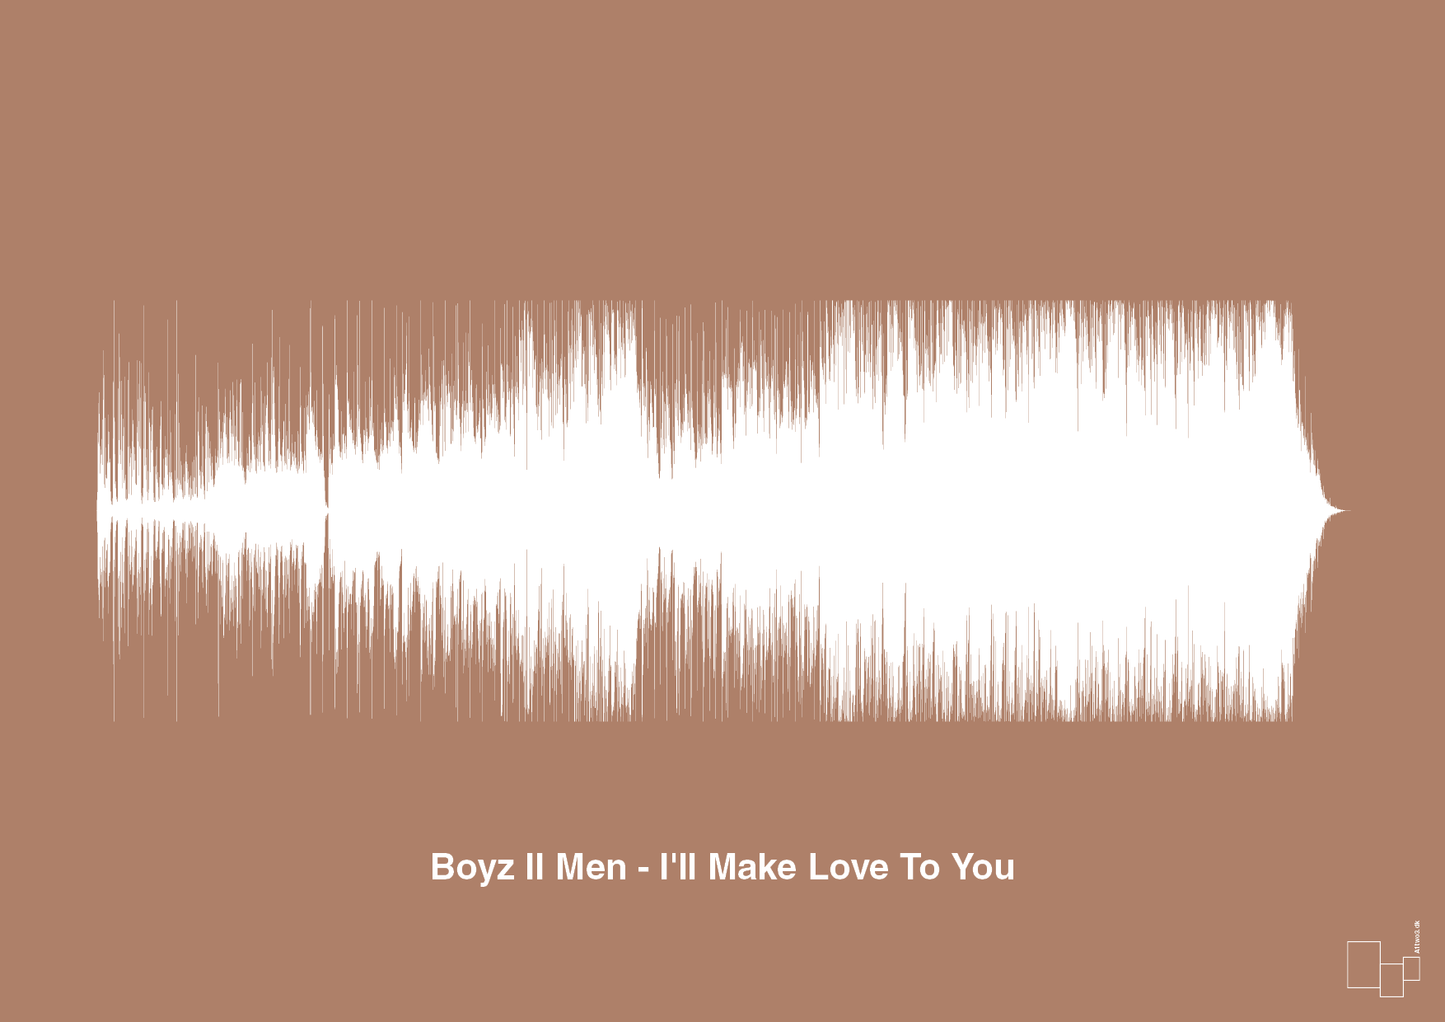 boyz II men - i'll make love to you - Plakat med Musik i Cider Spice